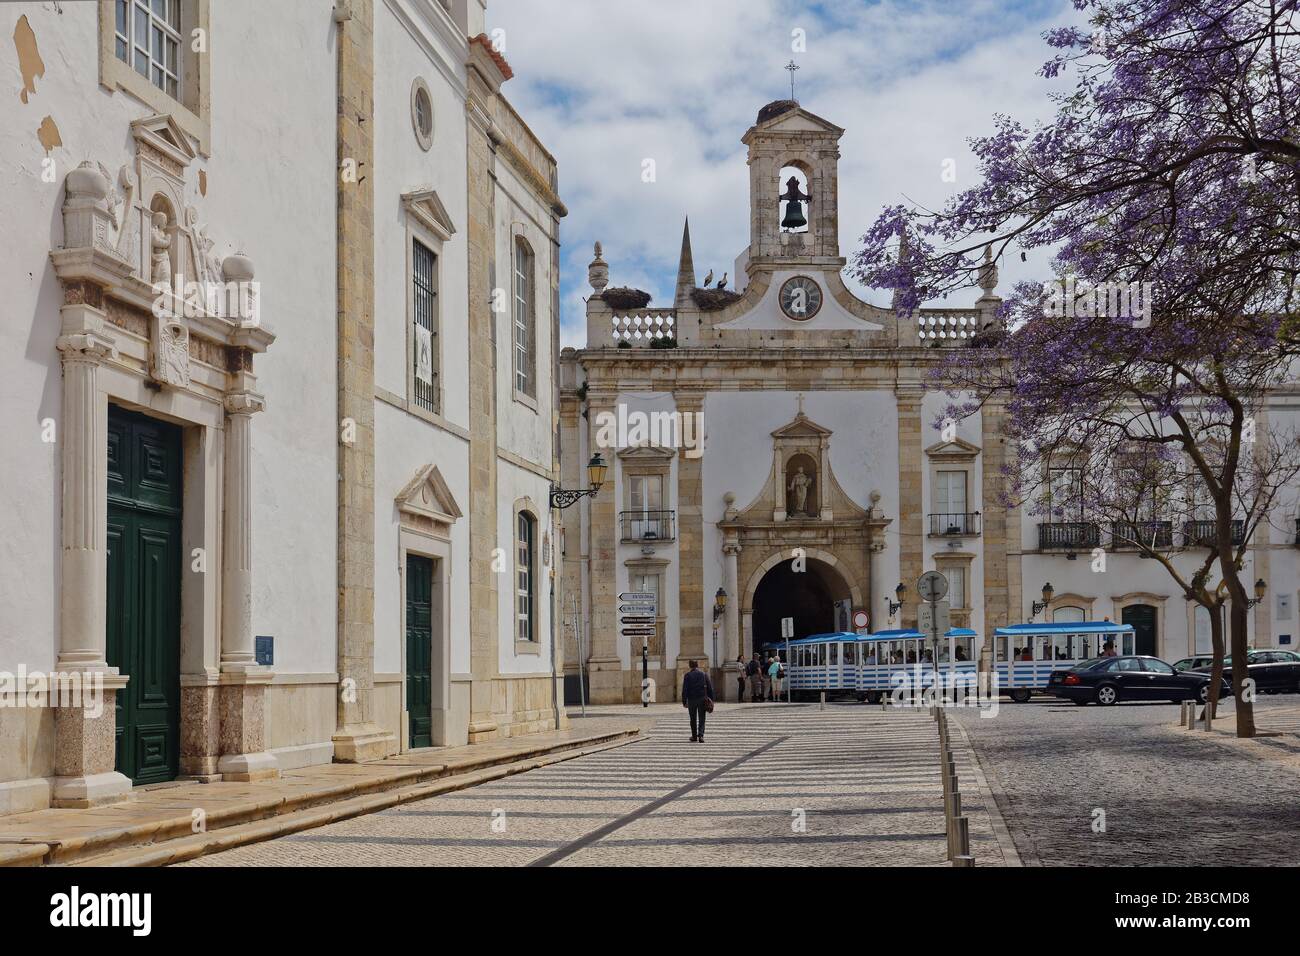 Touristenzug fährt durch den Stadtbogen, Arco da Vila in Faro, Portugal. Der neoklassizistische Torbogen wurde 1812 an der Stelle eines mittelalterlichen Tores erbaut Stockfoto